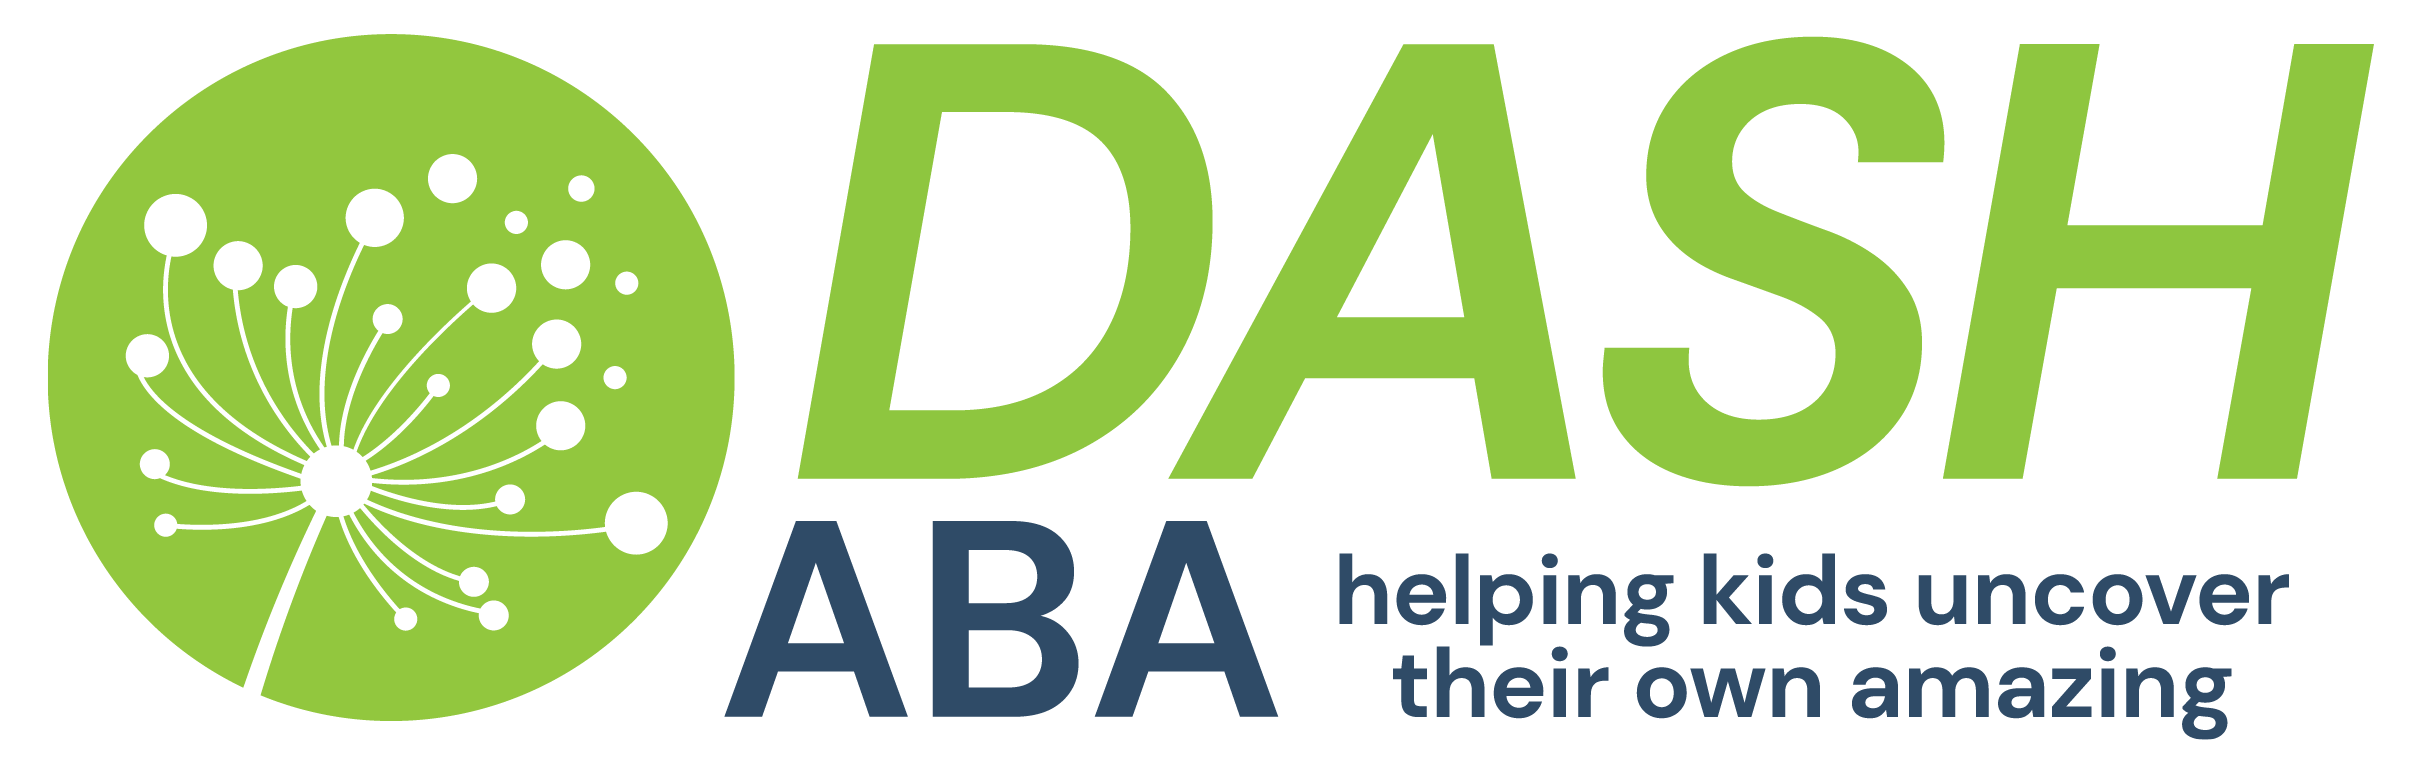 Dash ABA logo